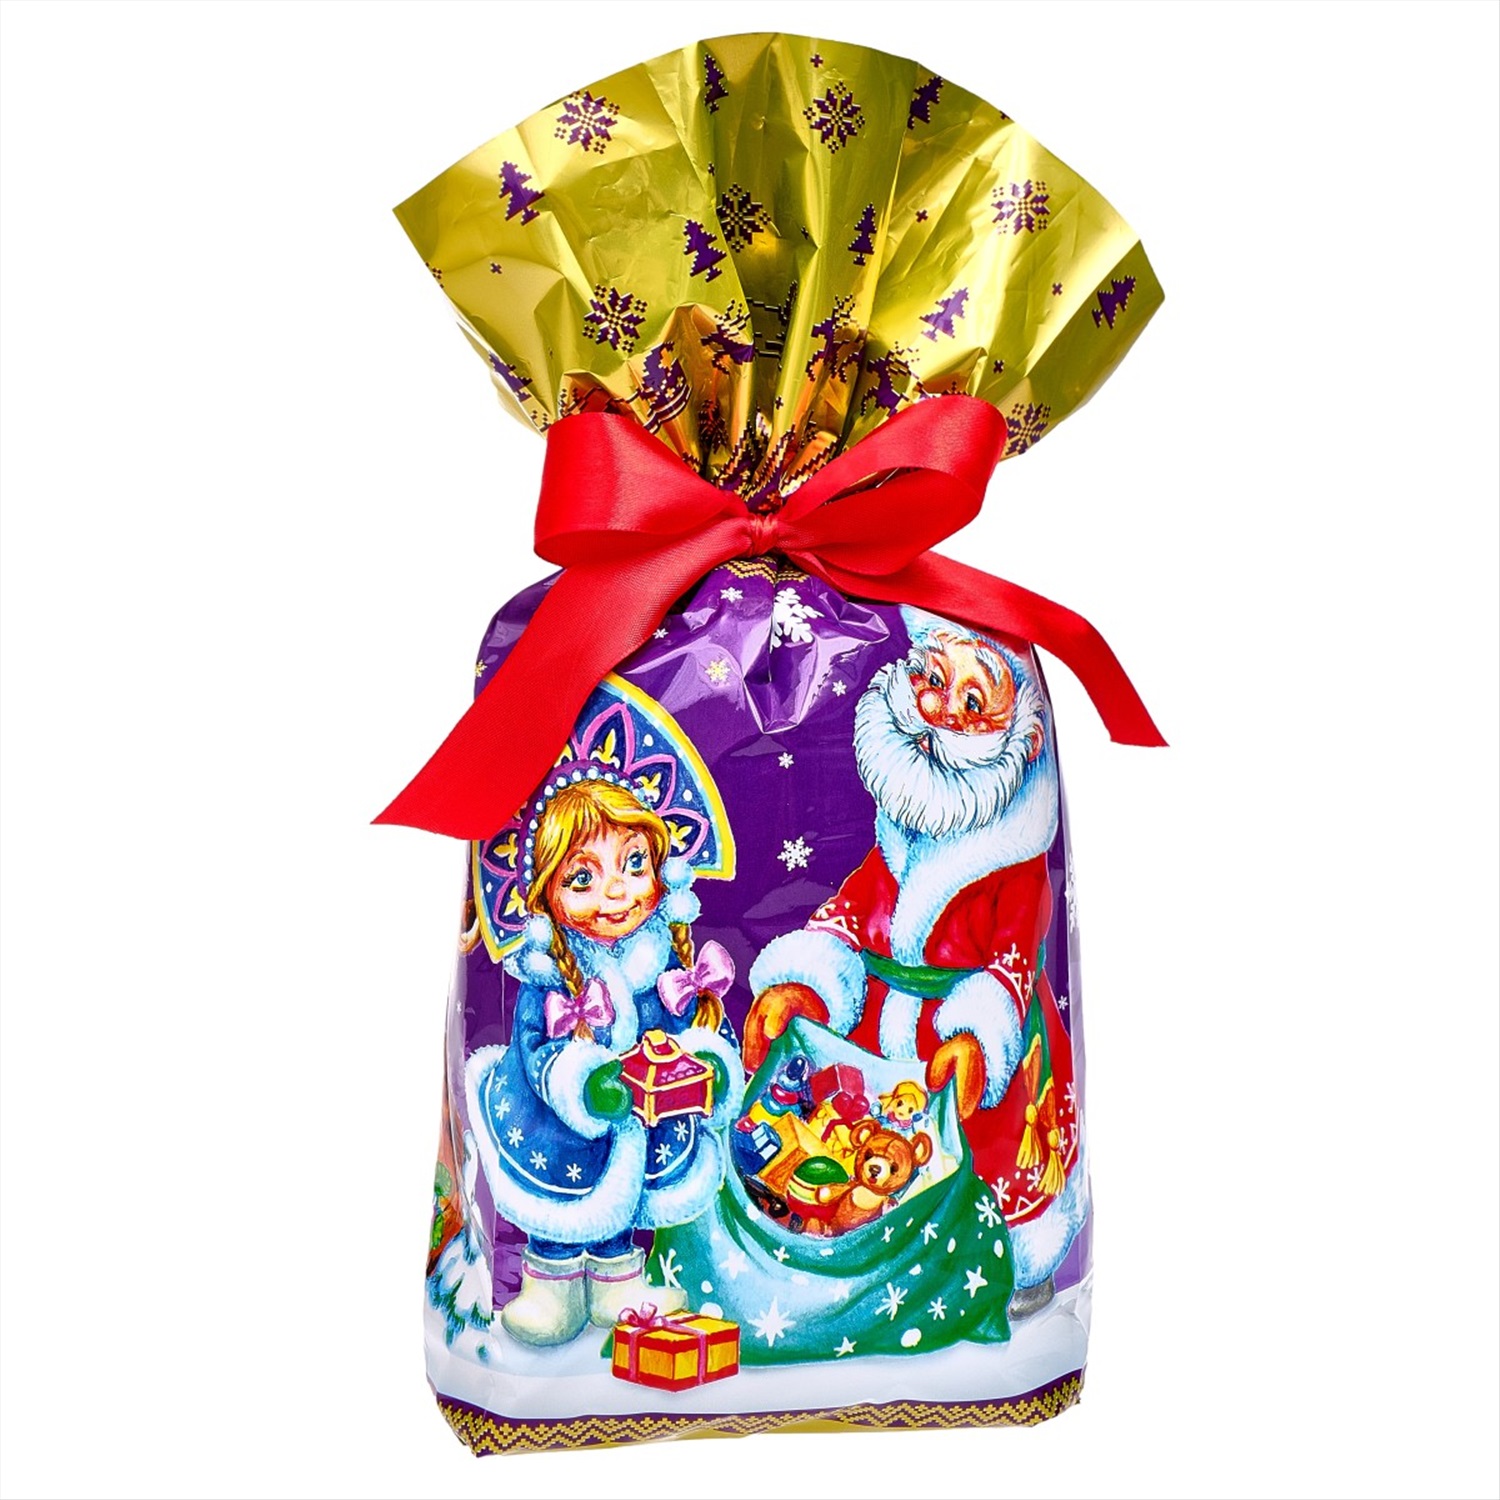 Сладкий новогодний подарок Панна-Котик в пакетике, 495 г